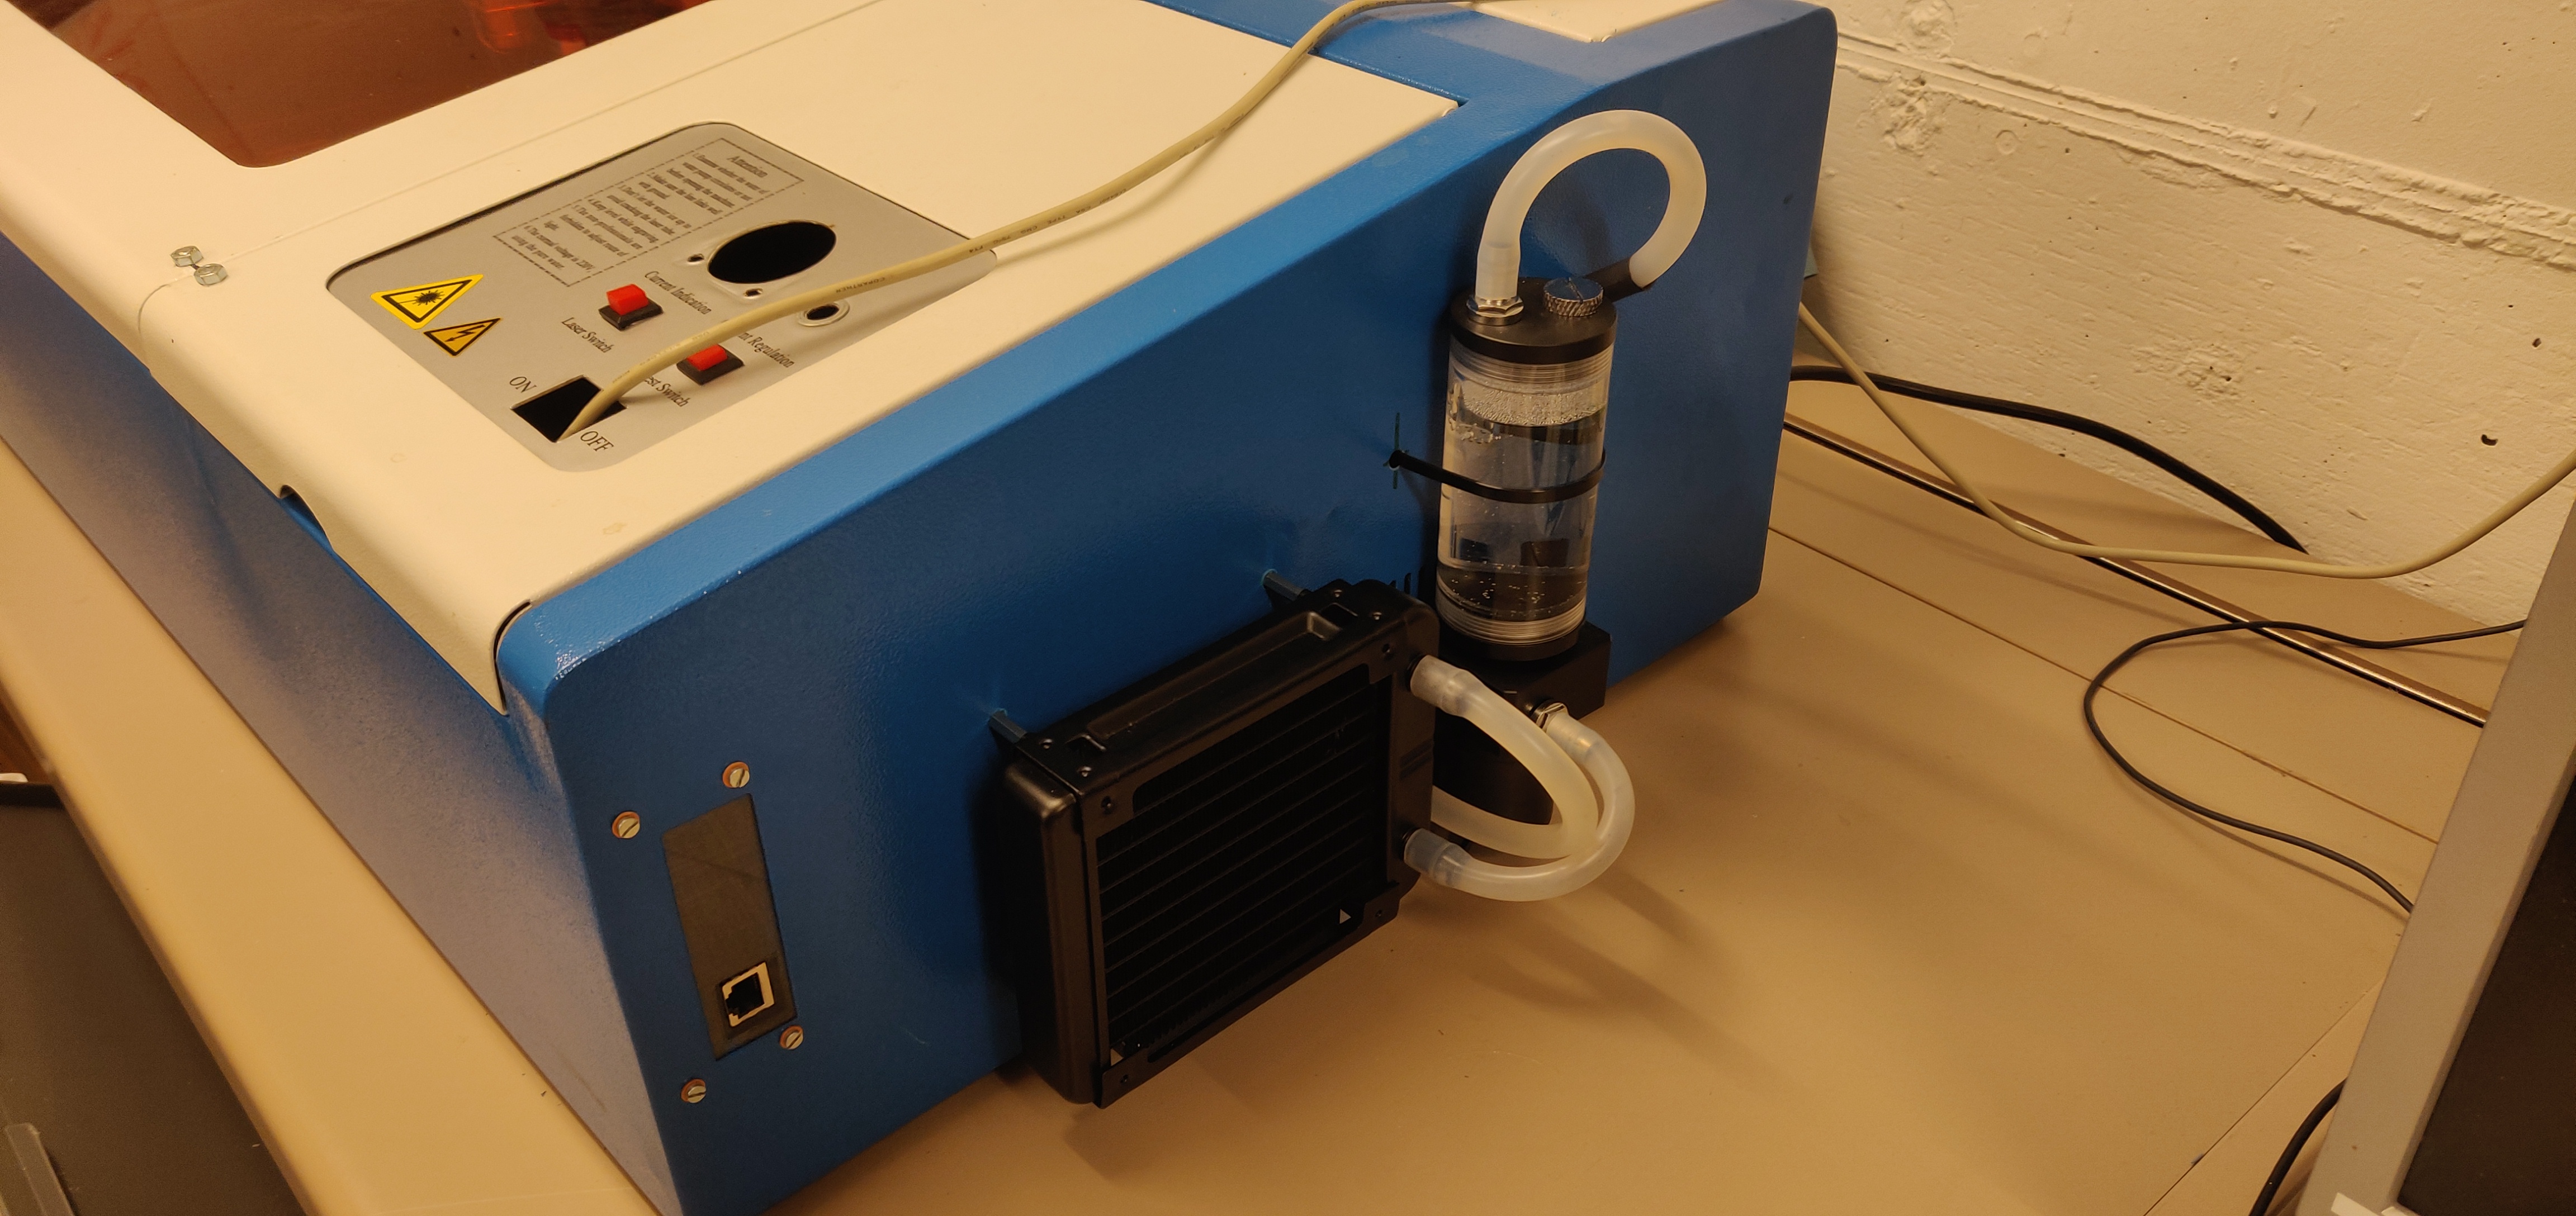 Wasserkühlung und Radiator auf der Seite des Lasers